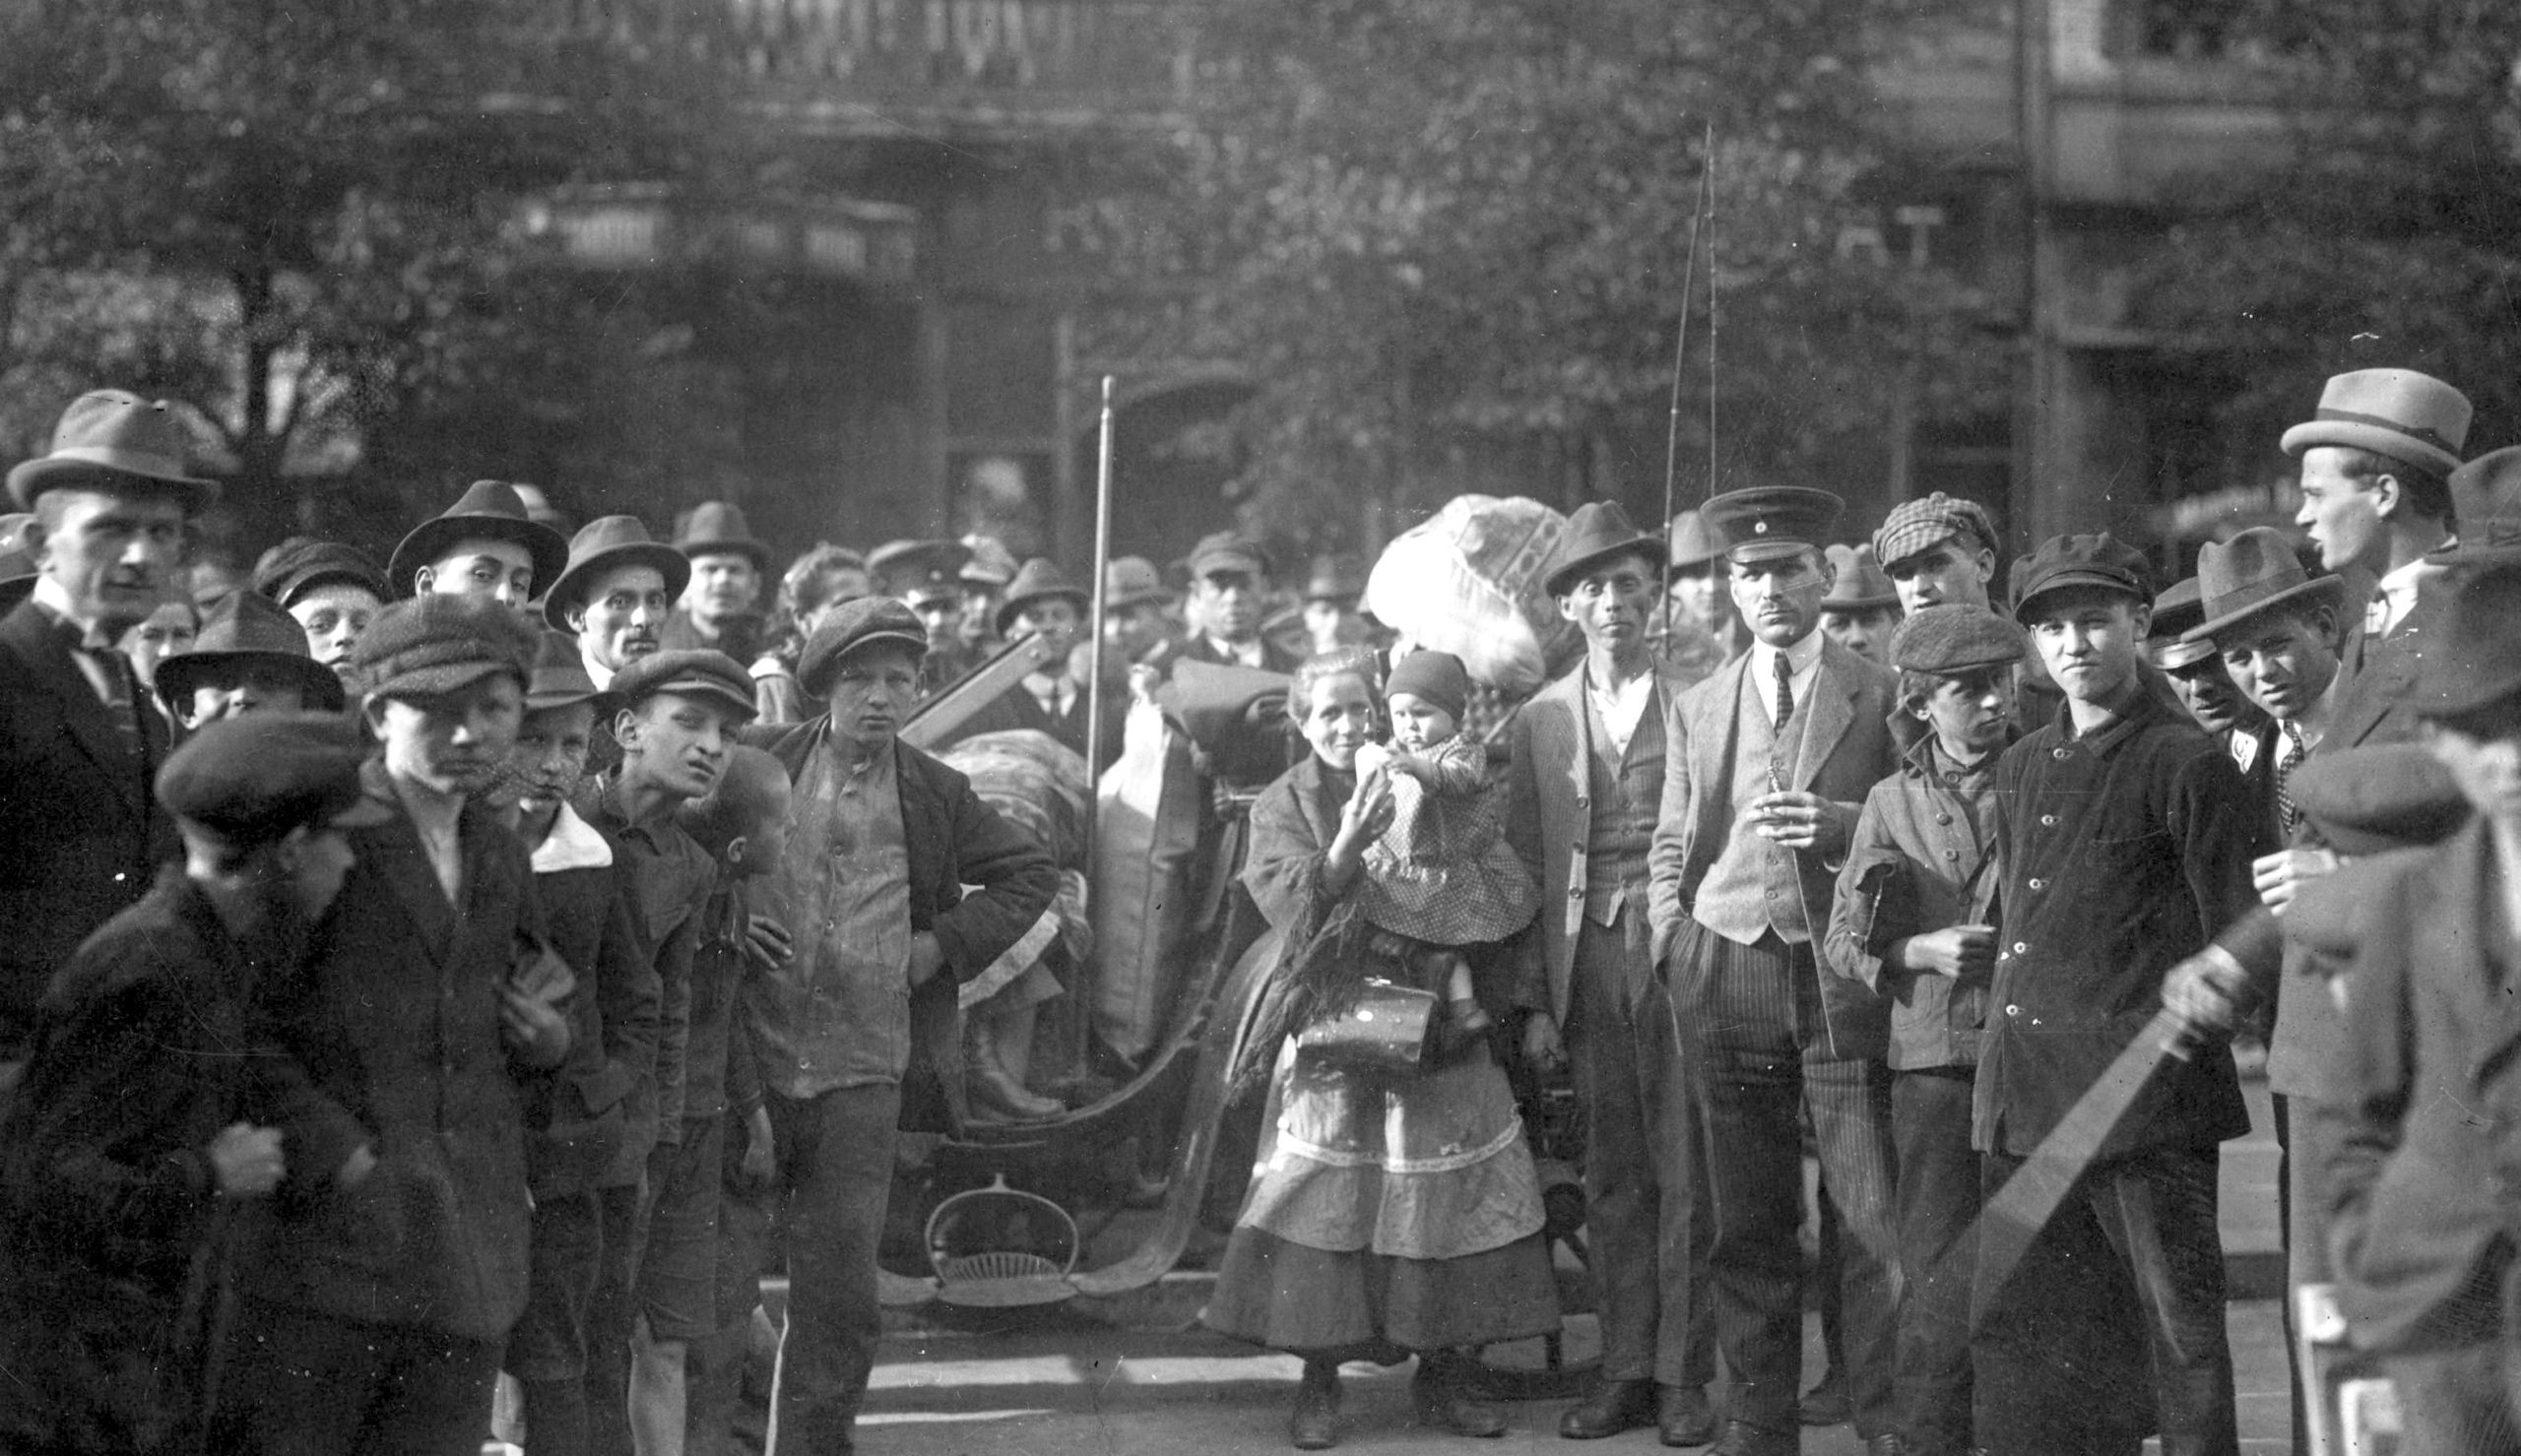 Grupa emigrantów polskich z Nadrenii biorących udział w plebiscycie (marzec 1921). Źródło: Narodowe Archiwum Cyfrowe